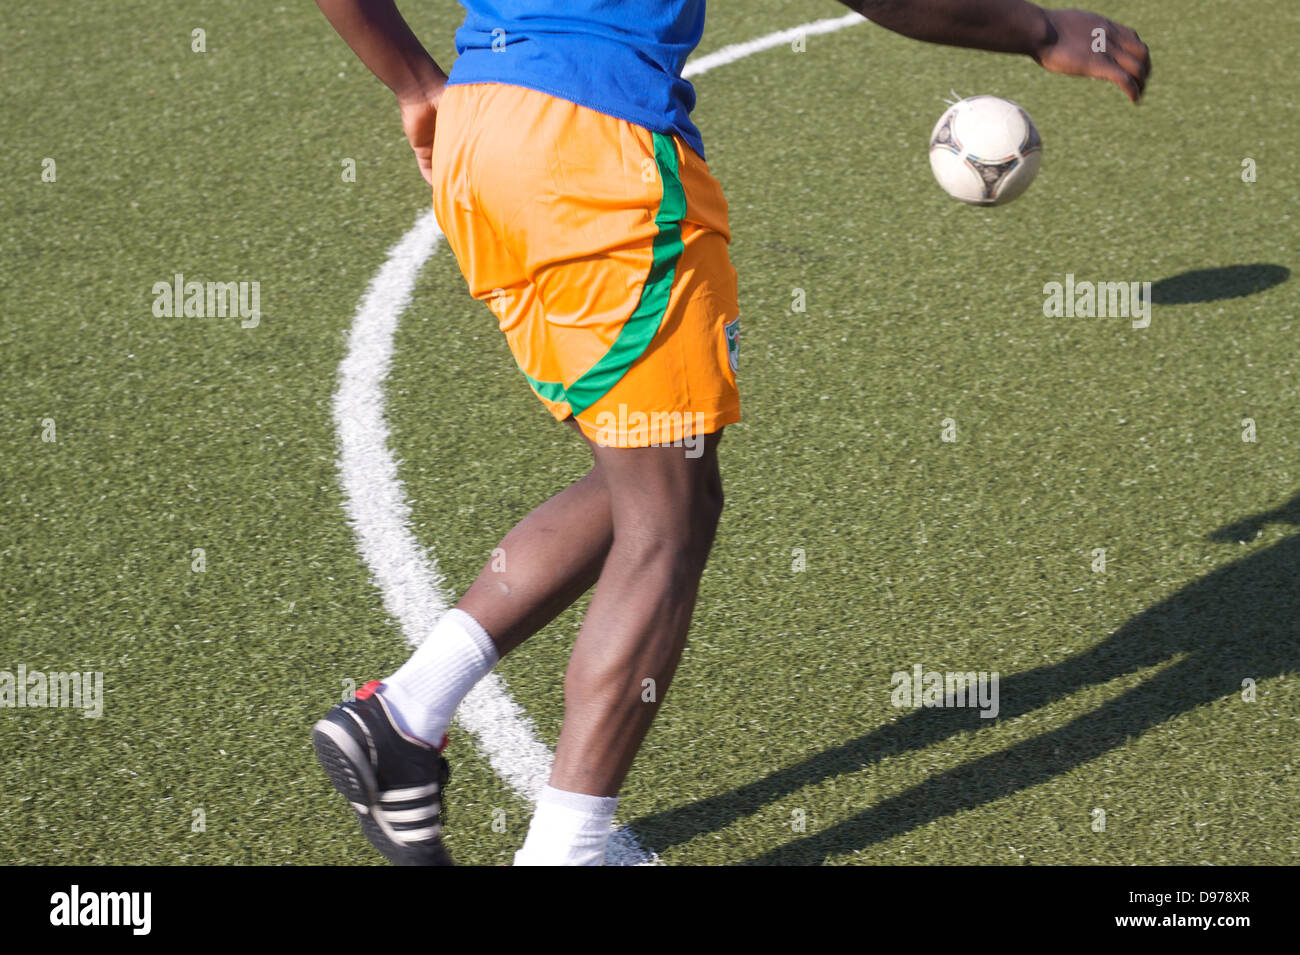 Jeune homme jouant au football. Jouer au football. Jouer au soccer. Banque D'Images